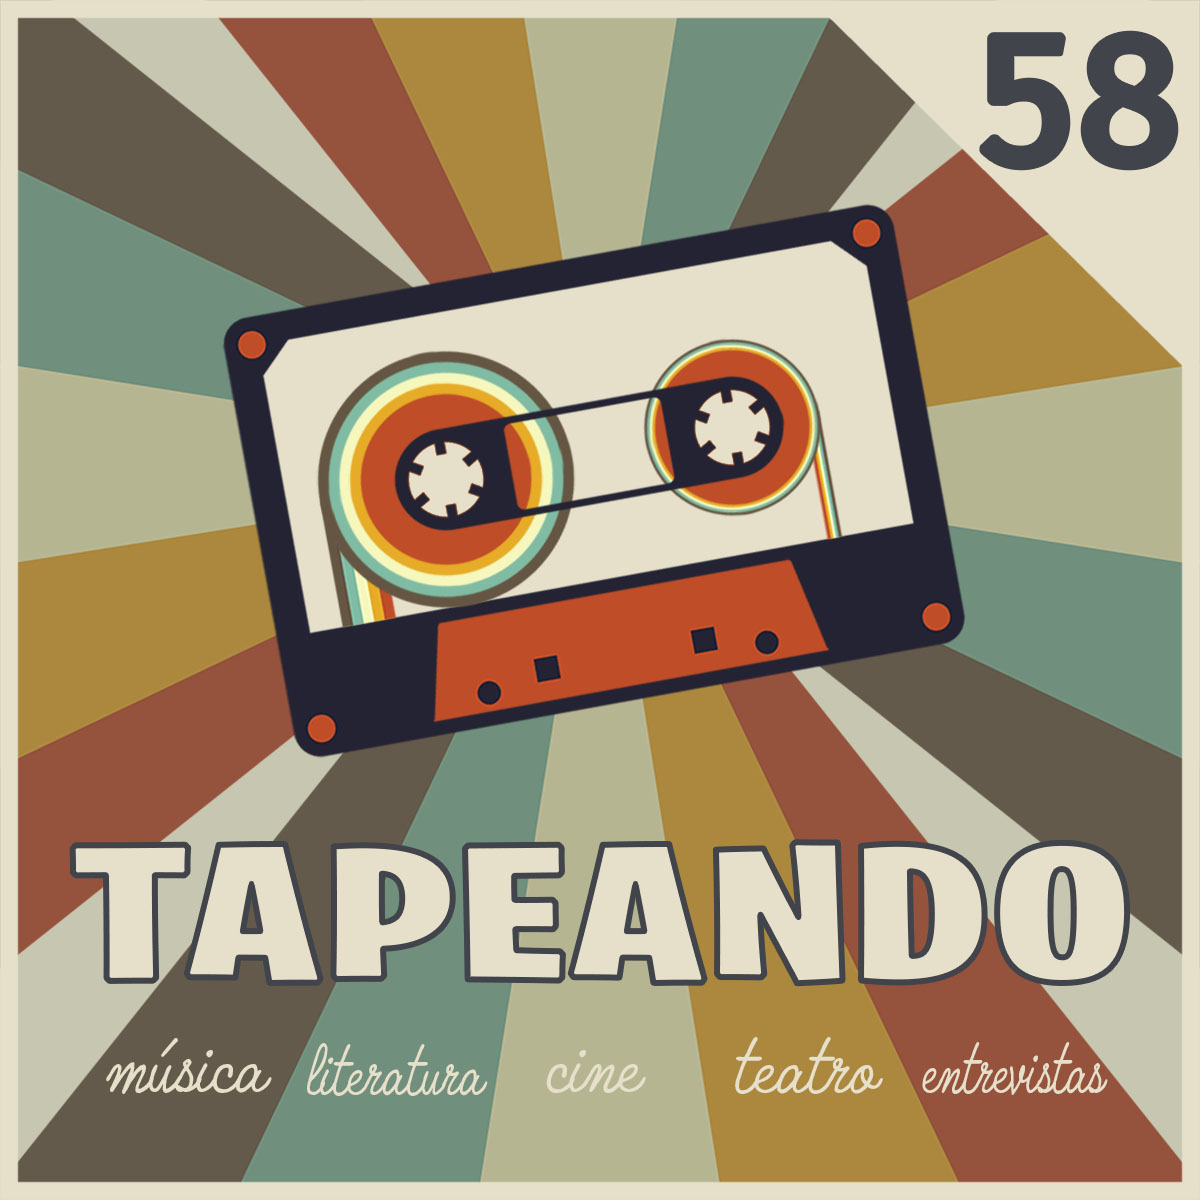 Tapeando Radio, Tapeandoradio, Tapeando, Radio, Podcast